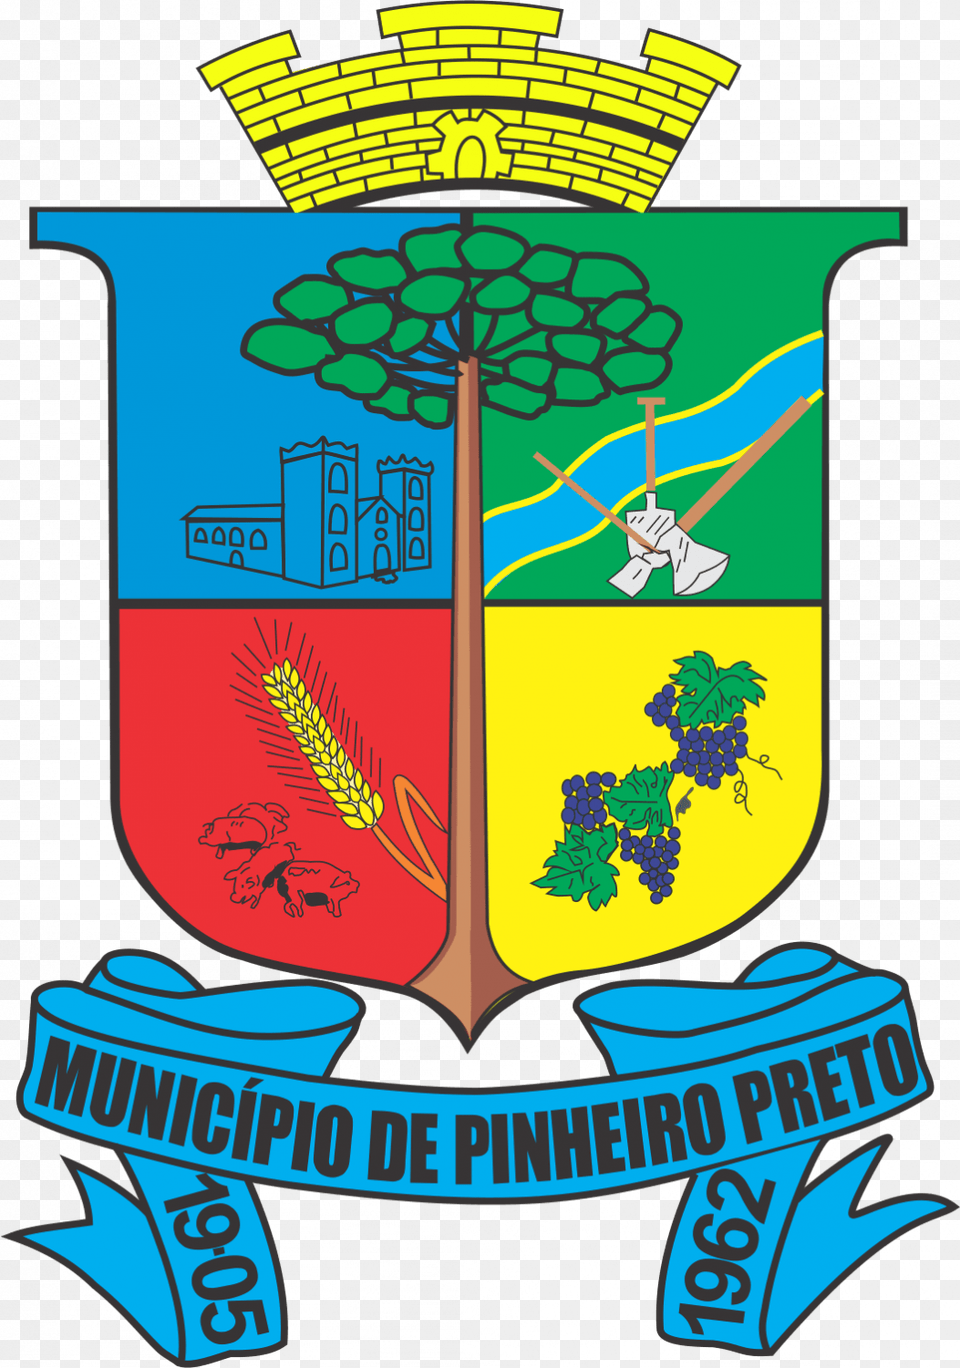 Bandeira Do Municpio Braso Pinheiro Preto, Emblem, Symbol Free Png Download